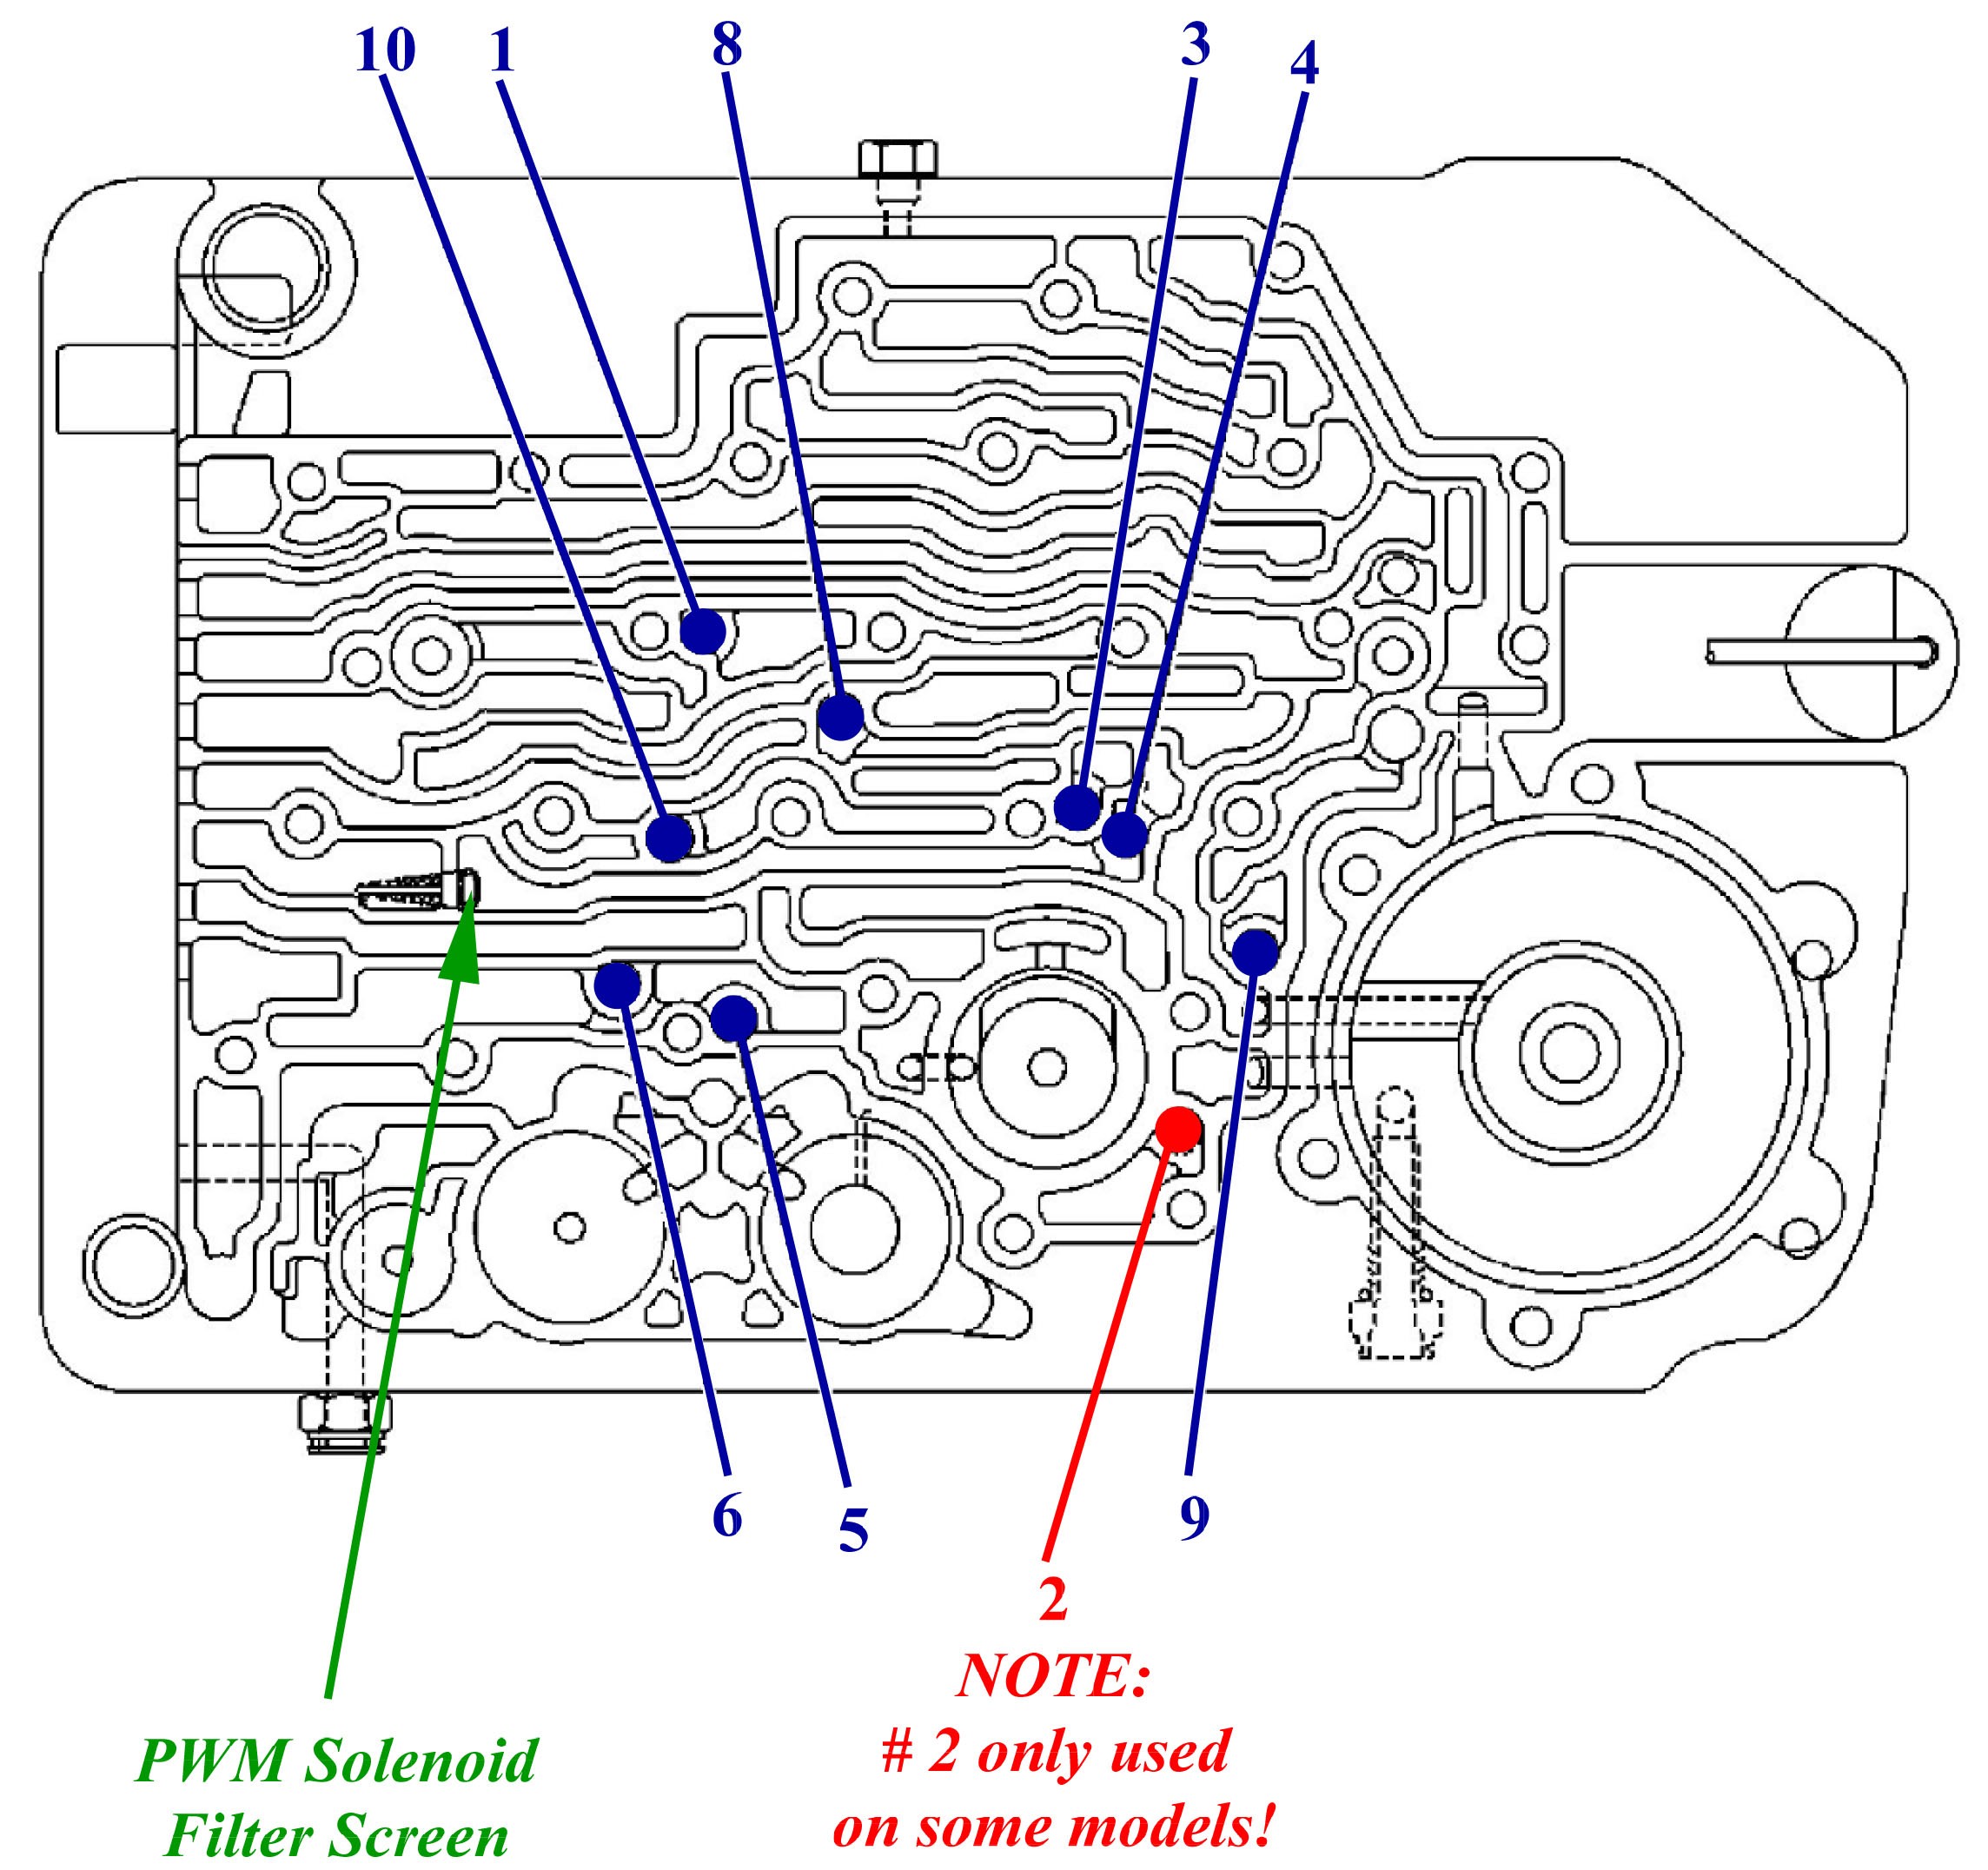 Ford 5 4 L Engine Diagram 2 4r100 Transmission Valve Body Diagram E4od Parts Diagram Wiring Of Ford 5 4 L Engine Diagram 2